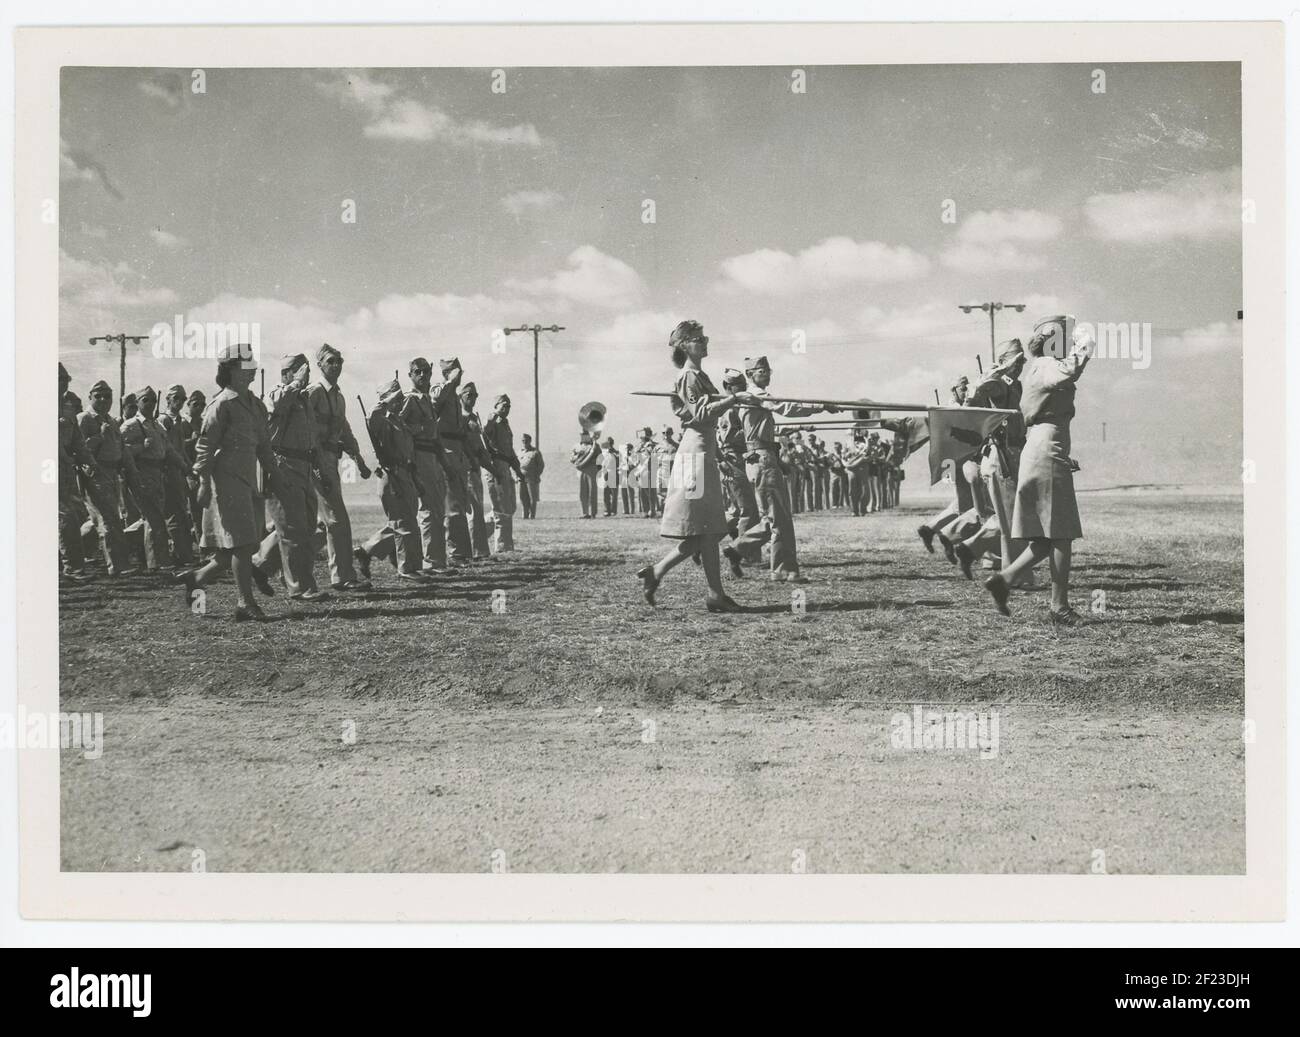 Parade im Camp Russel B. Huckstep in Ägypten während des Zweiten Weltkriegs, 1945 Stockfoto